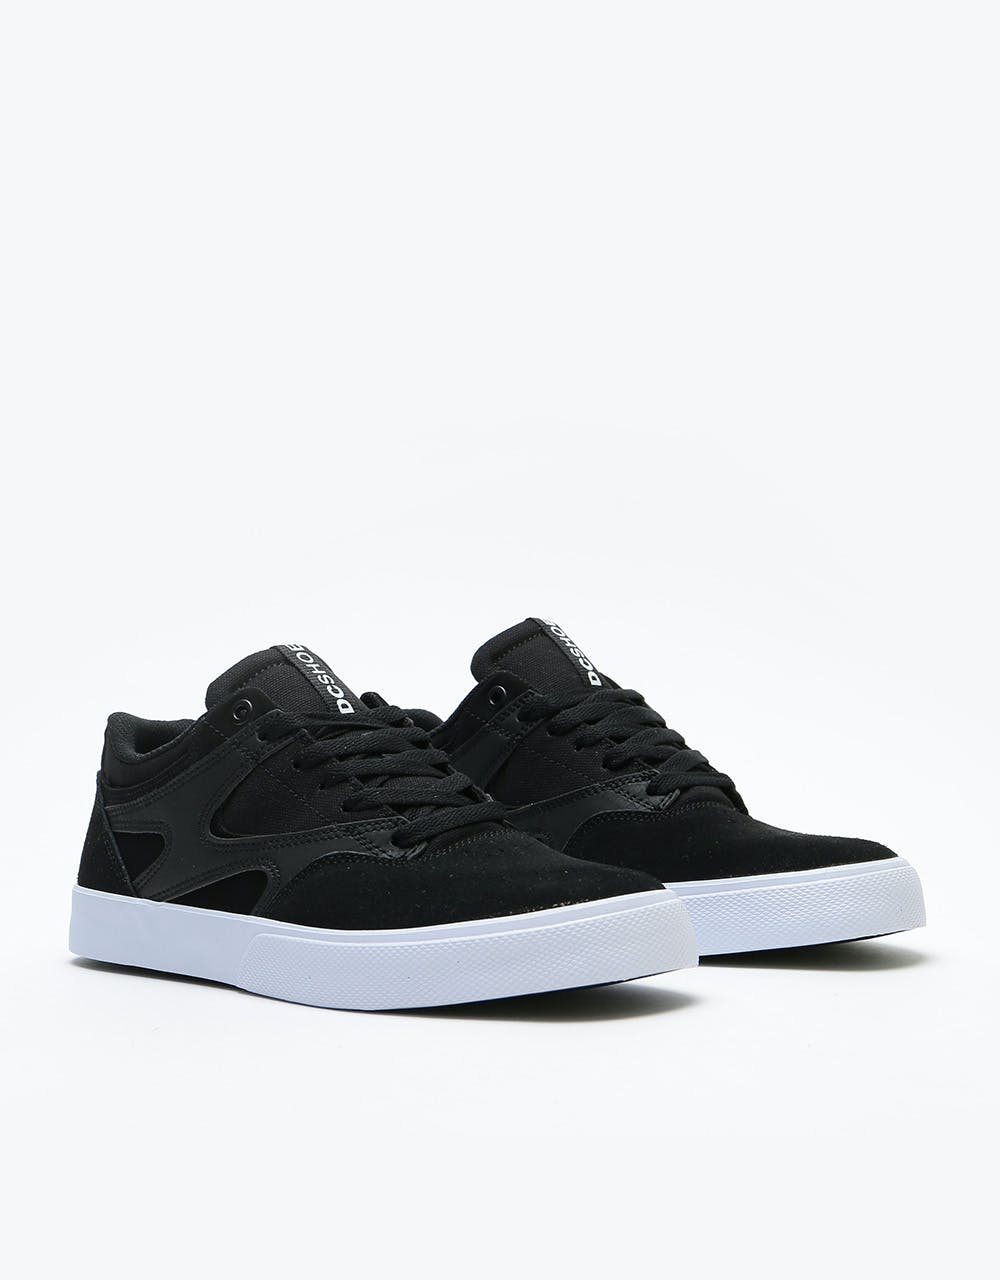 DC Kalis Vulc Skate Shoes - Black/White